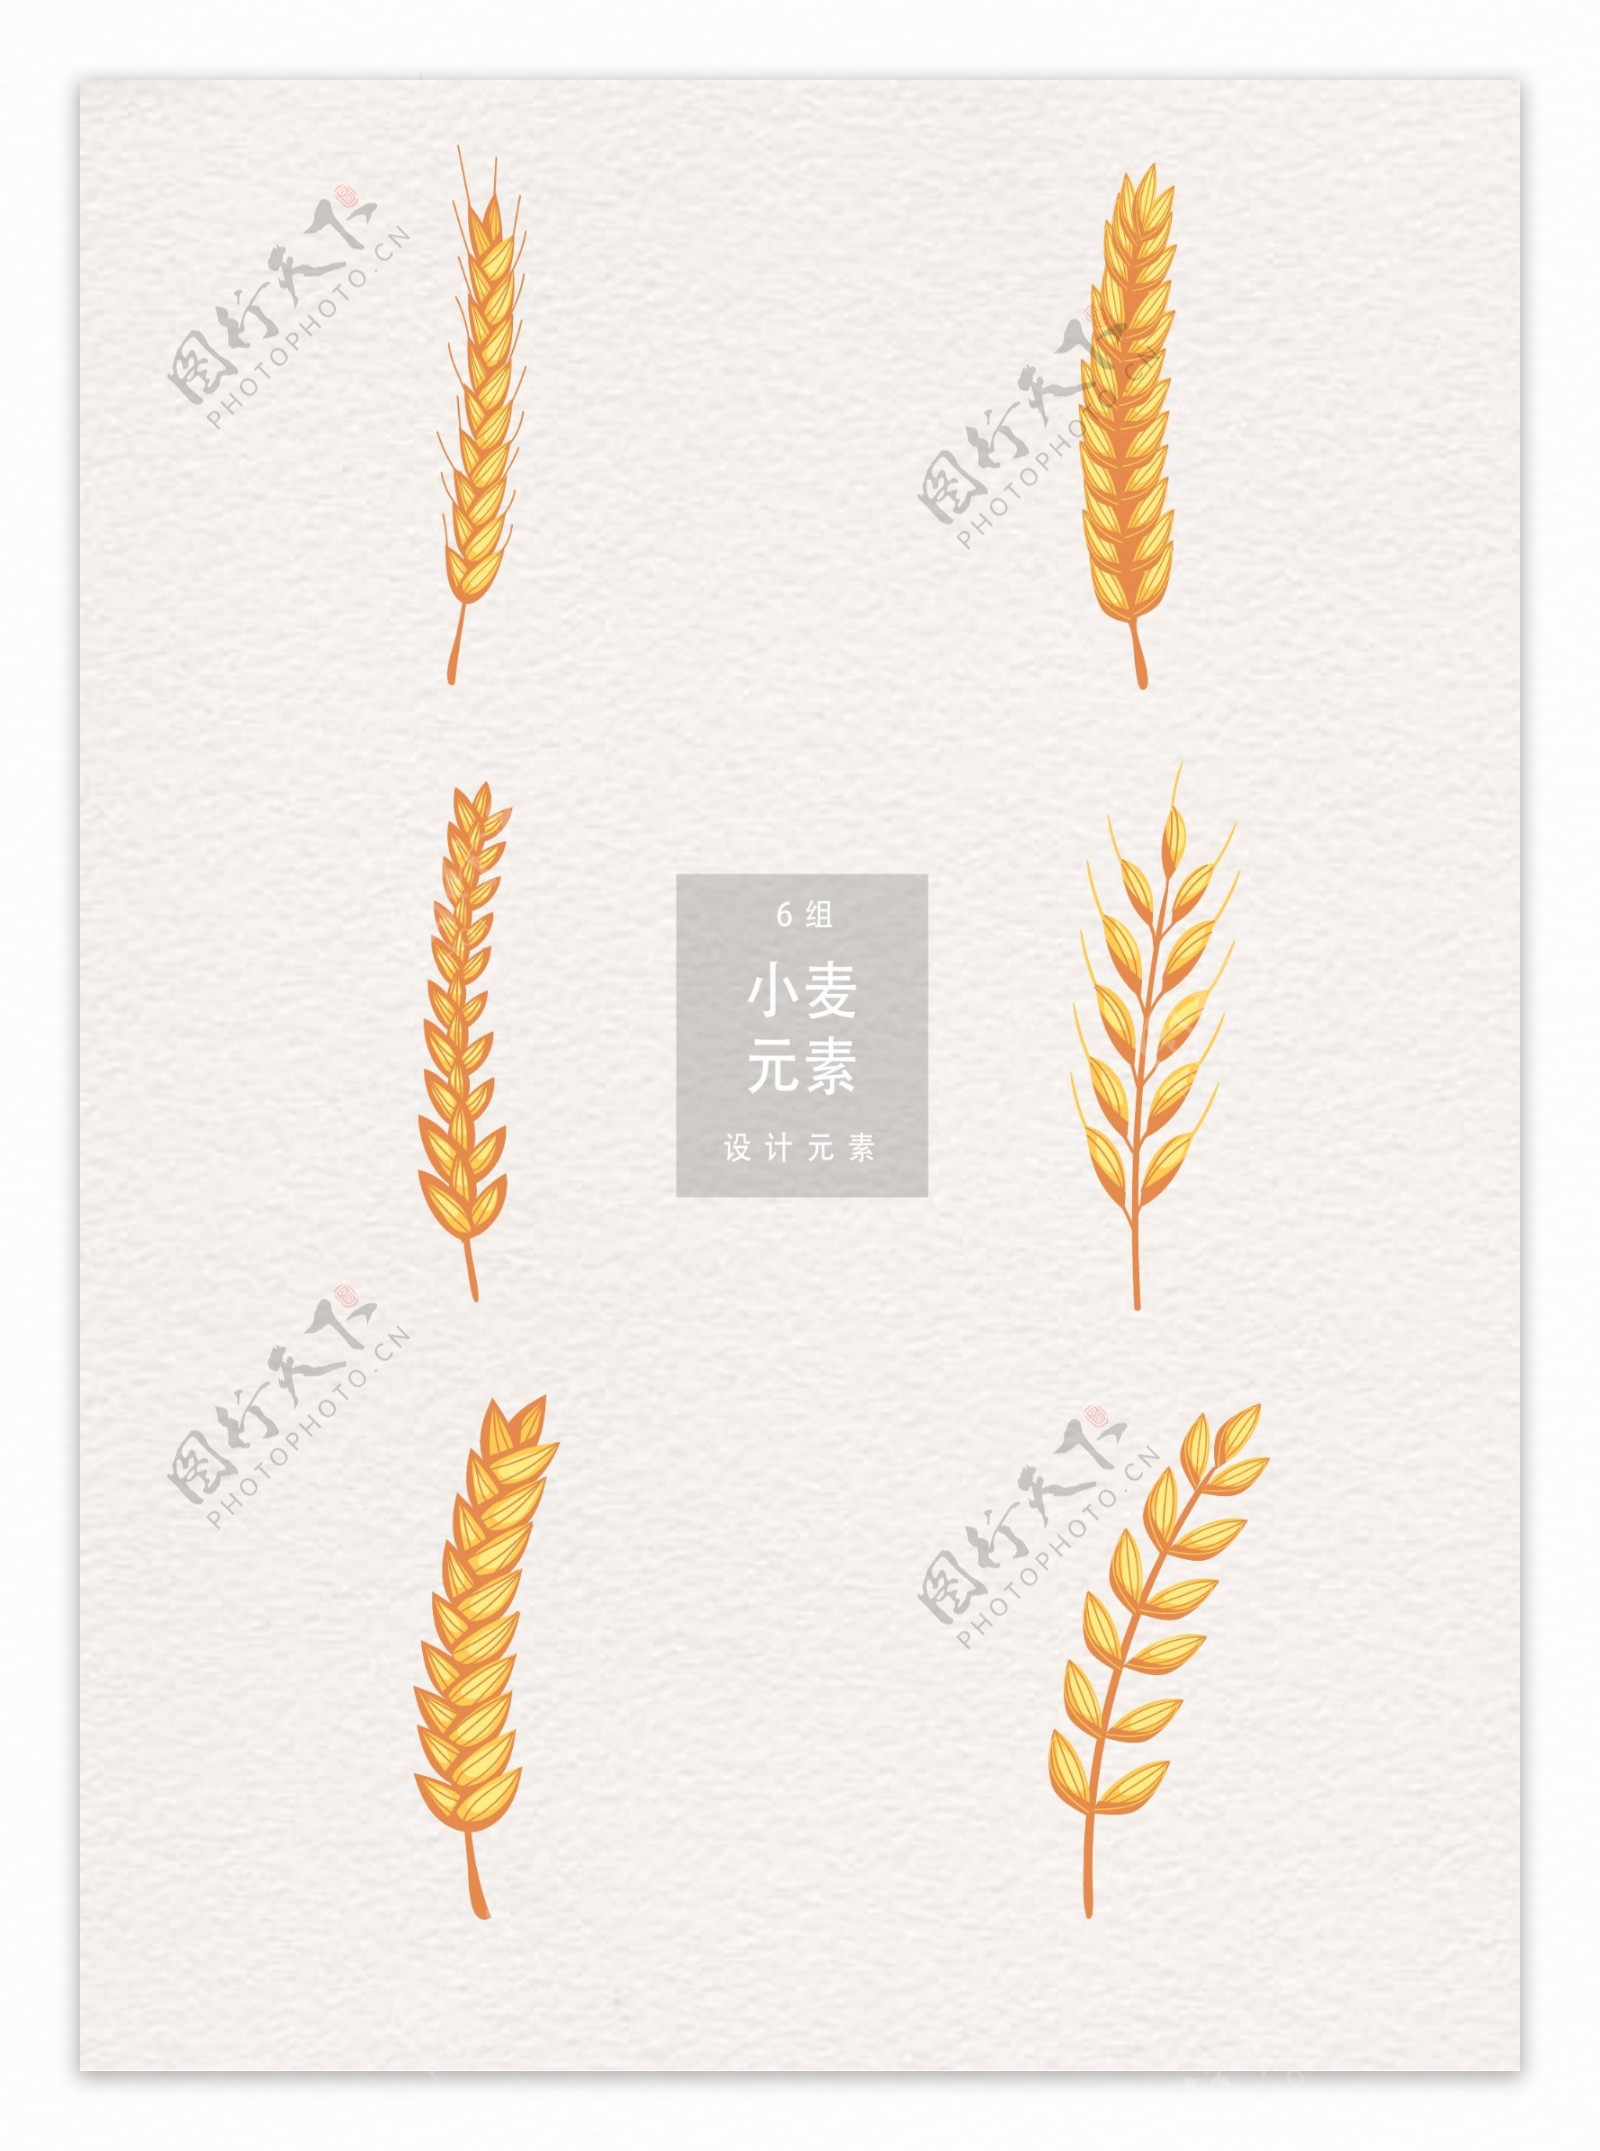 小麦设计元素矢量素材